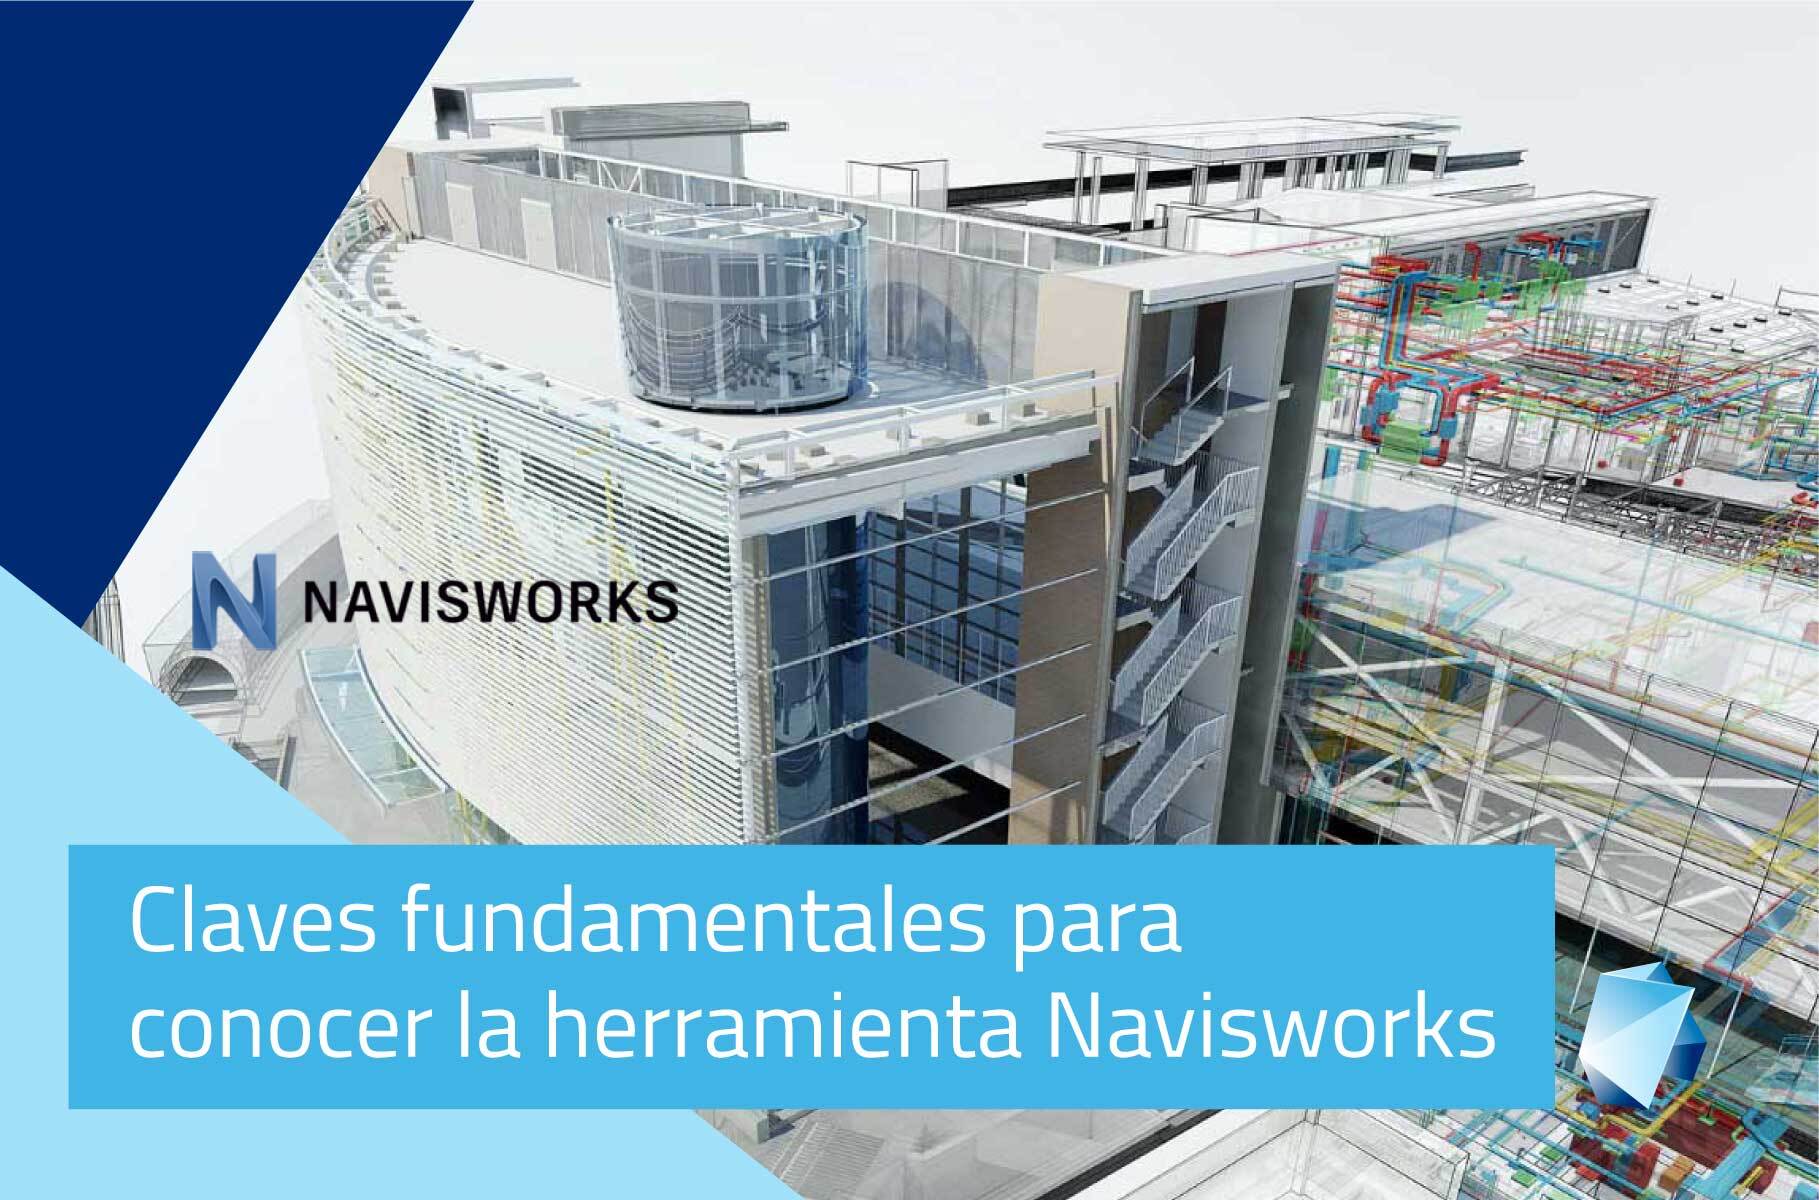 Claves fundamentales para conocer la herramienta Navisworks